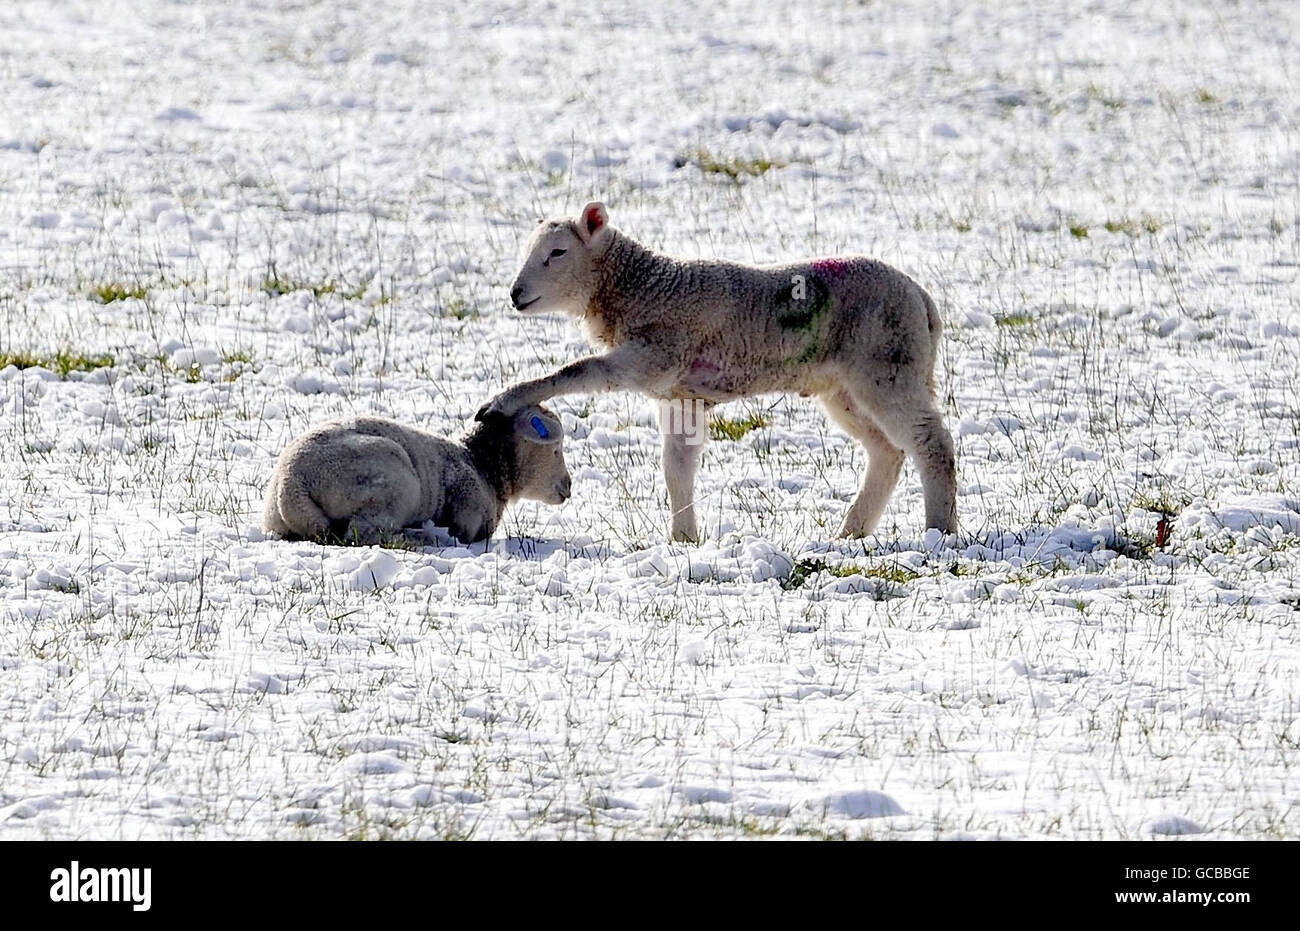 Les agneaux d'un champ couvert de neige à Catterick, dans le North Yorkshire, essaient de rester au chaud car la neige devrait se répandre à nouveau dans de nombreuses parties du Royaume-Uni. Banque D'Images